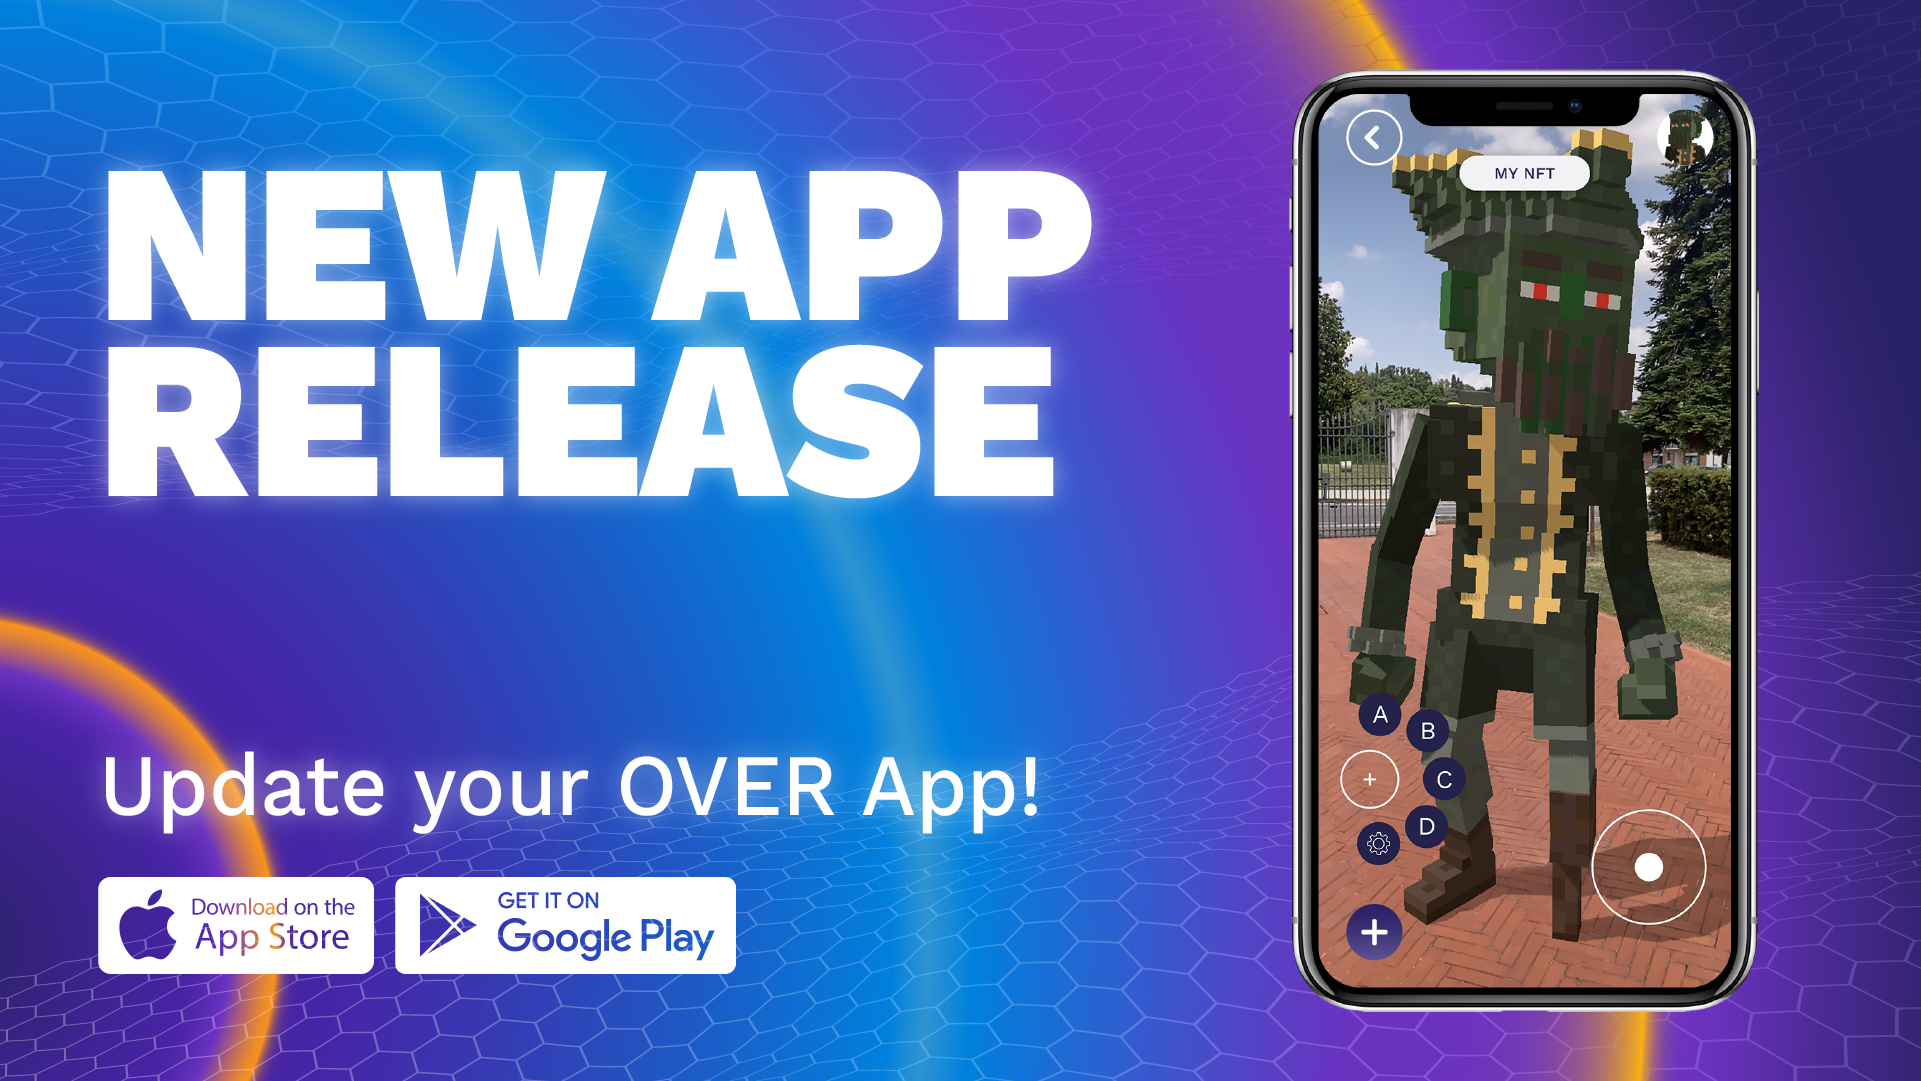 OVER App release: update your OVER App version!